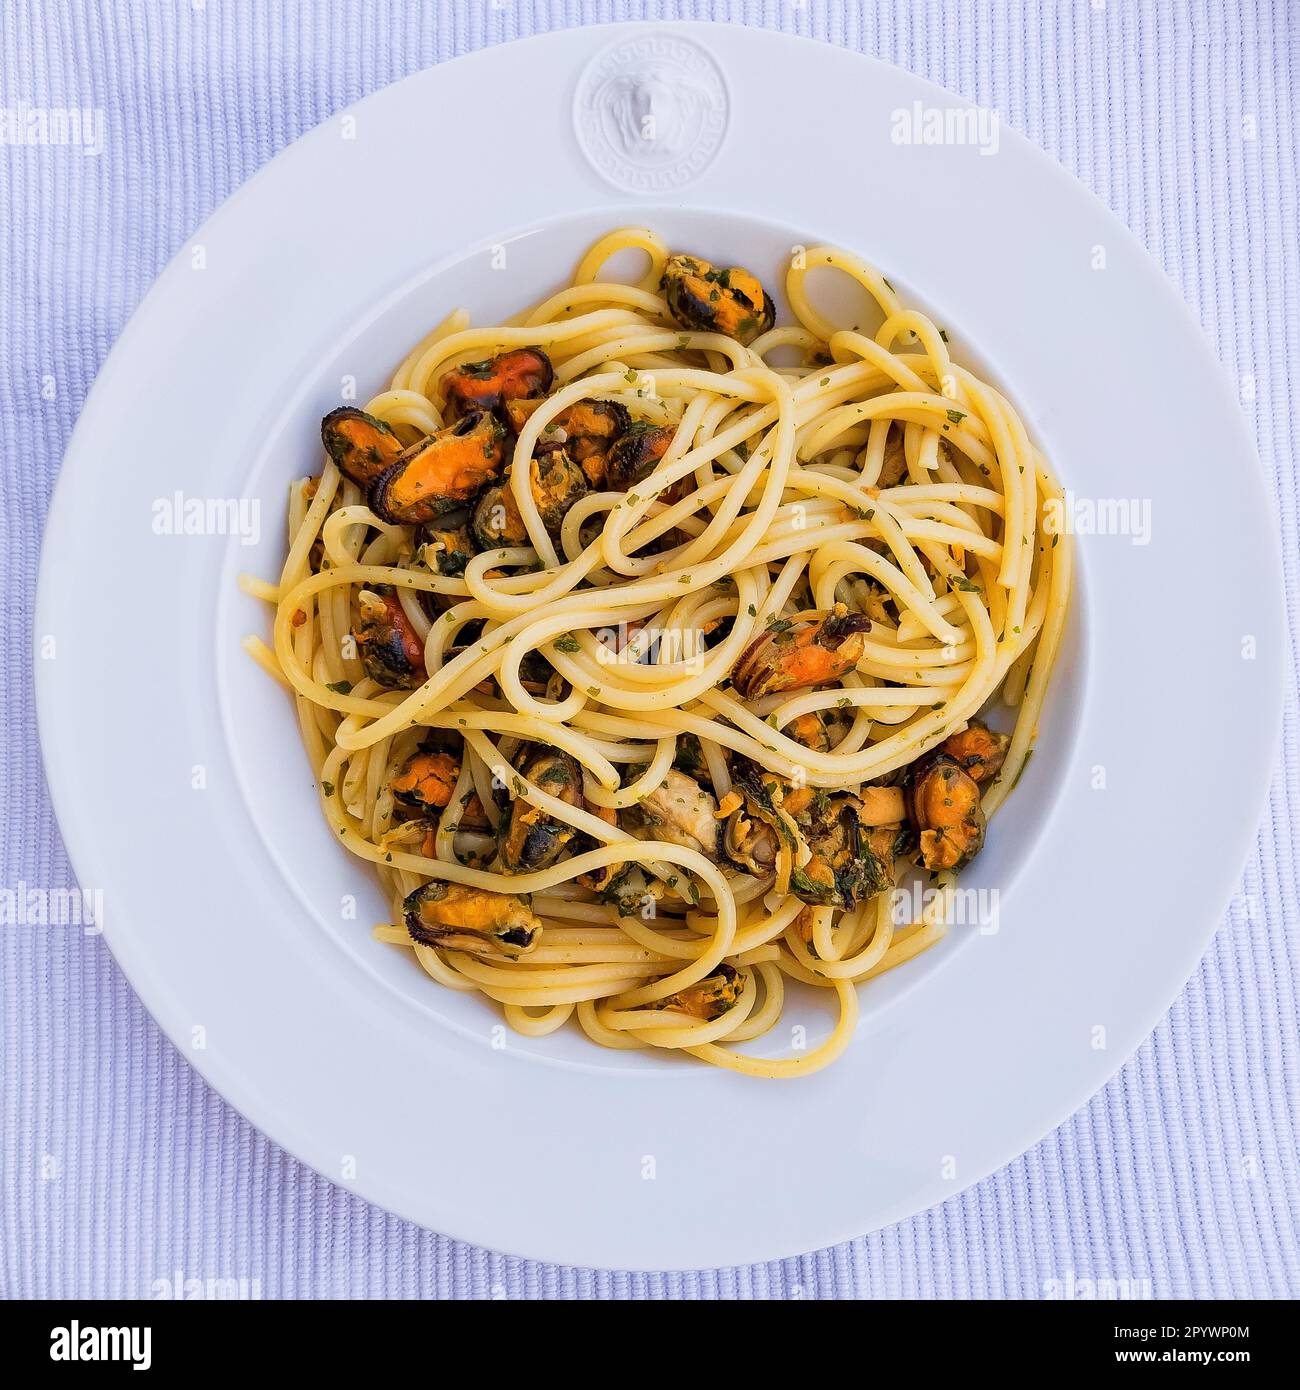 Italienisches Gericht der italienischen Küche, Spaghetti mit Muscheln Vongole, Italien Stockfoto